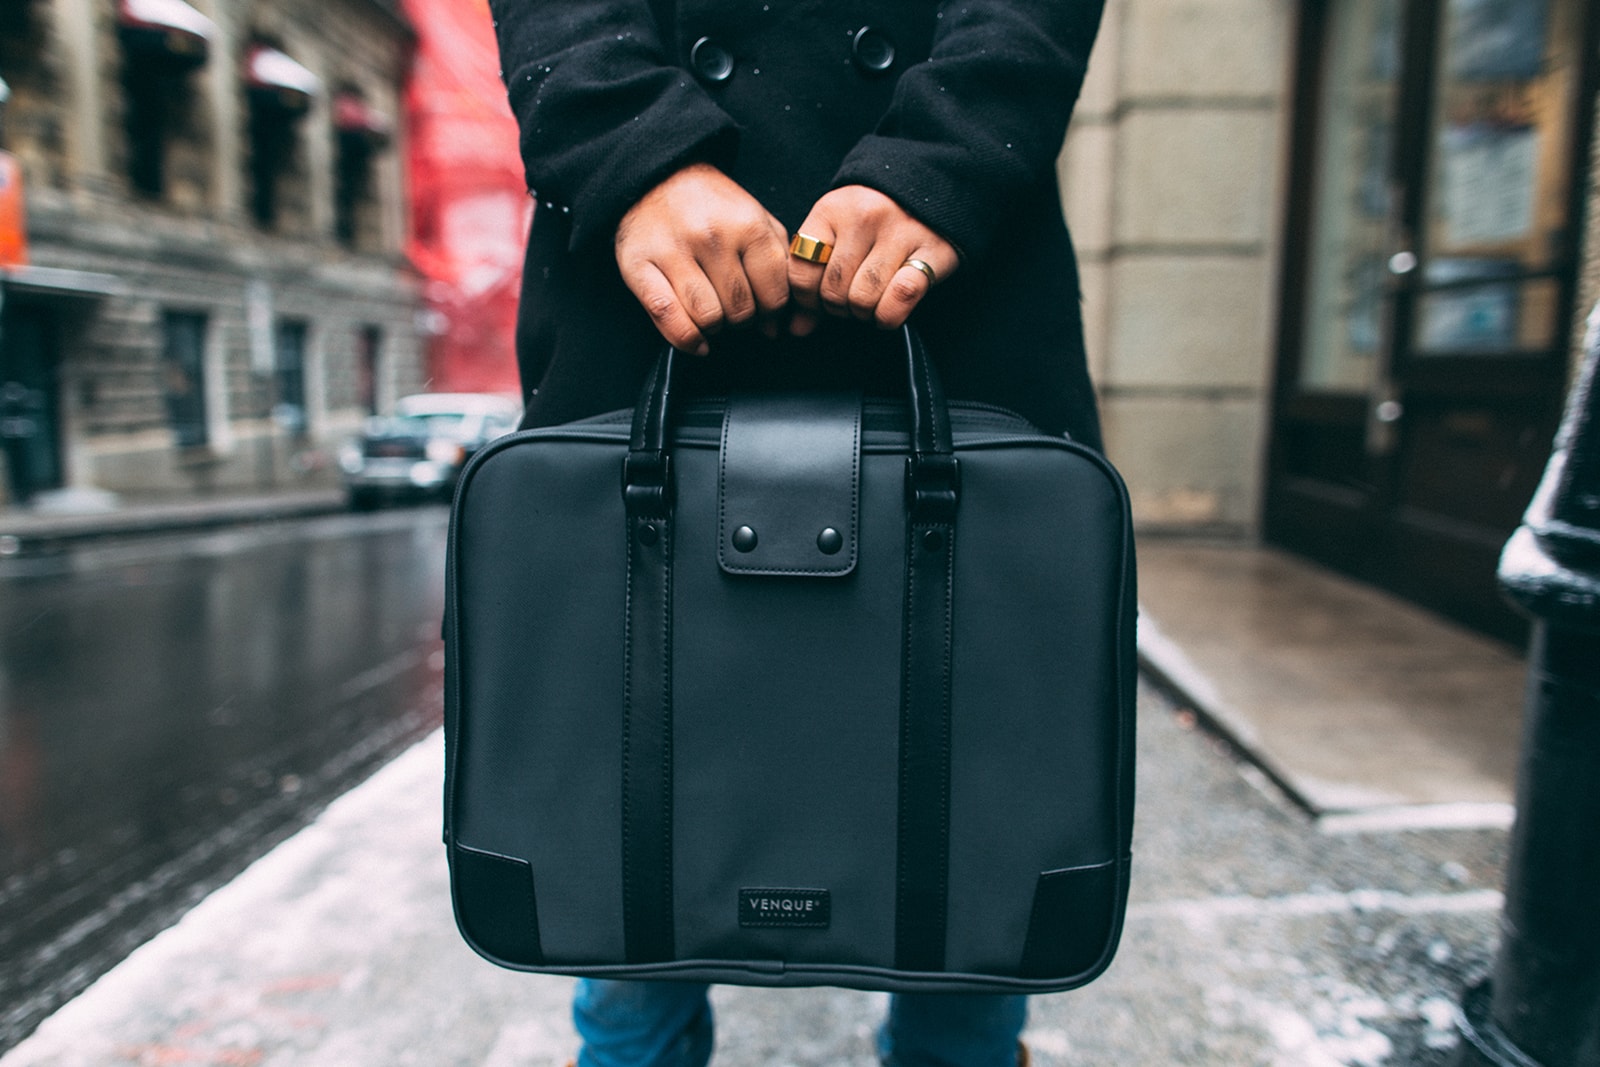 venque carbon collection bag Ceini Milano briefcase